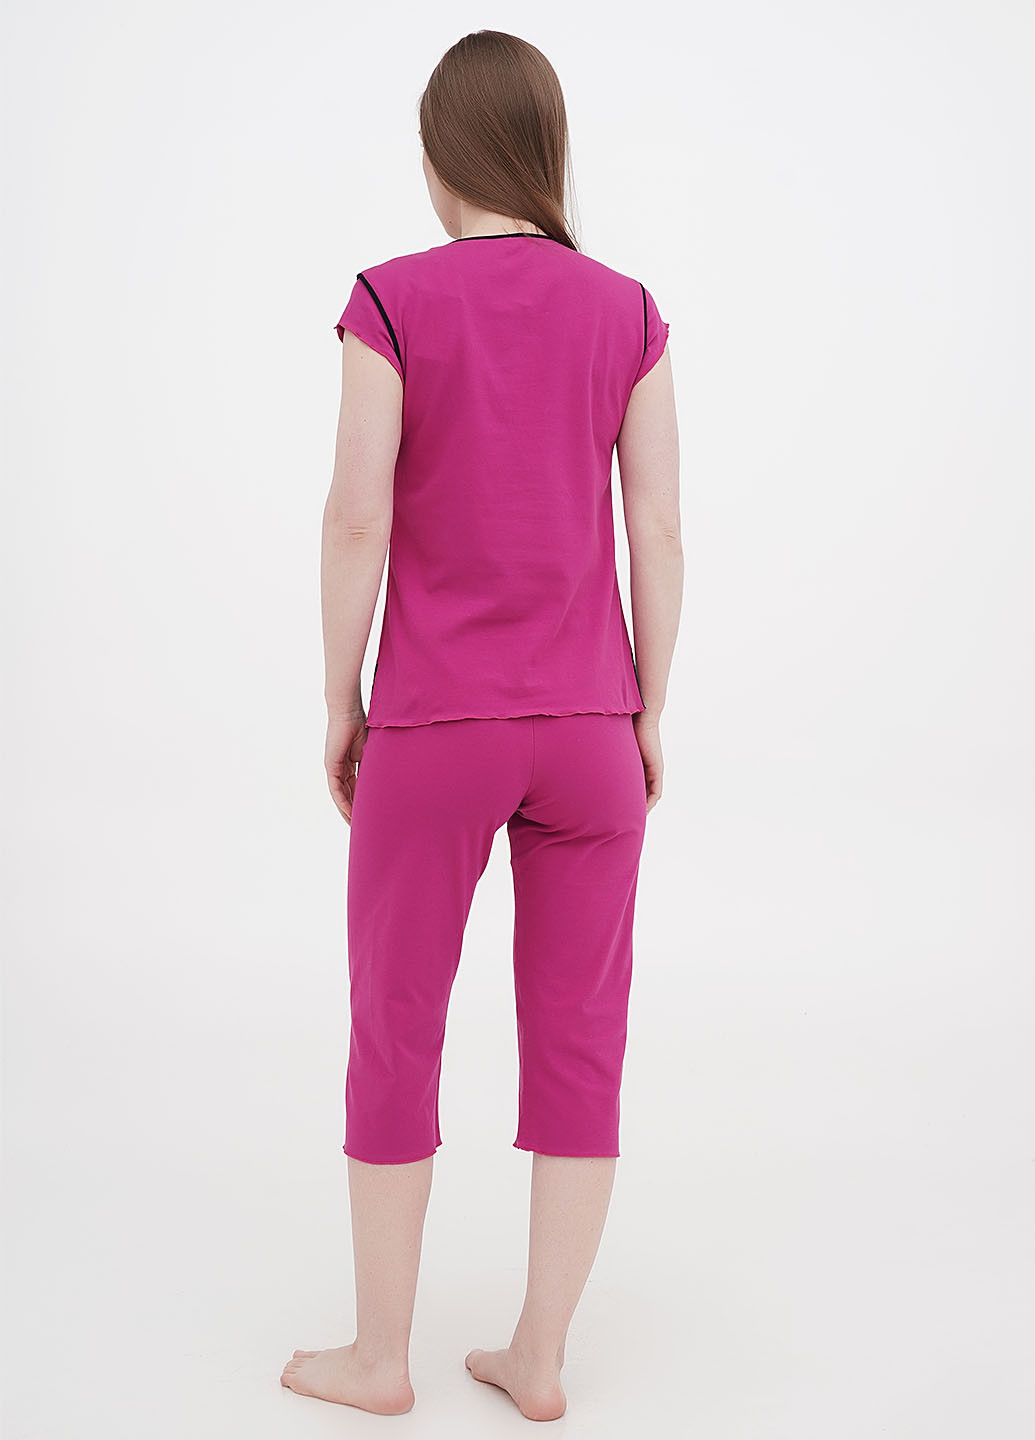 Рожева всесезон піжама (футболка, бриджі) футболка+ бриджі Aniele